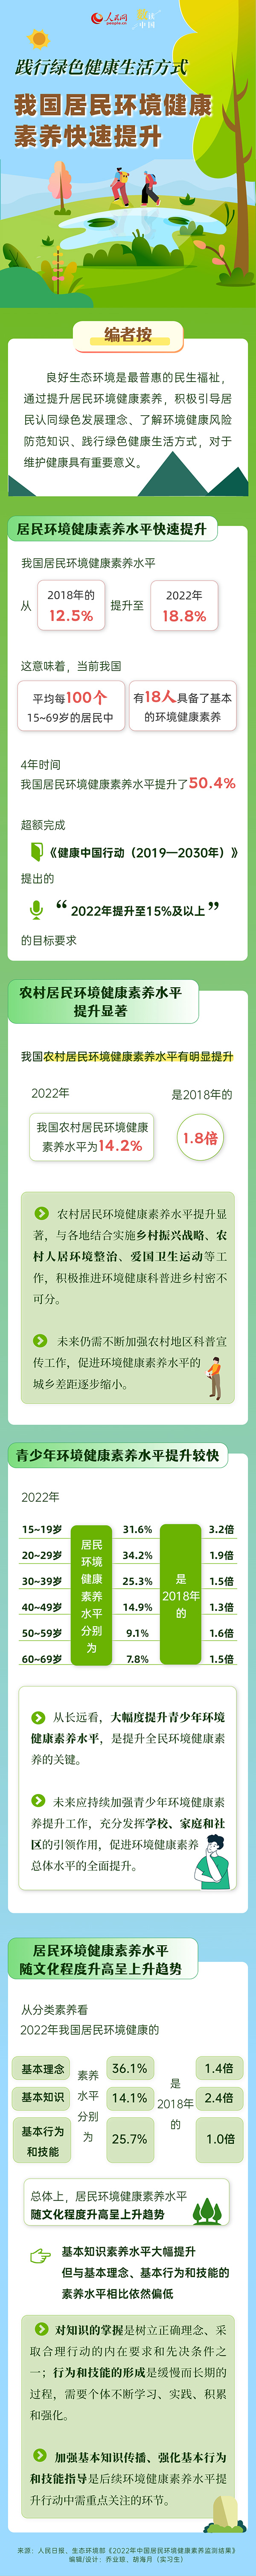 数读中国 | 践行绿色健康生活方式 我国居民环境健康素养快速提升